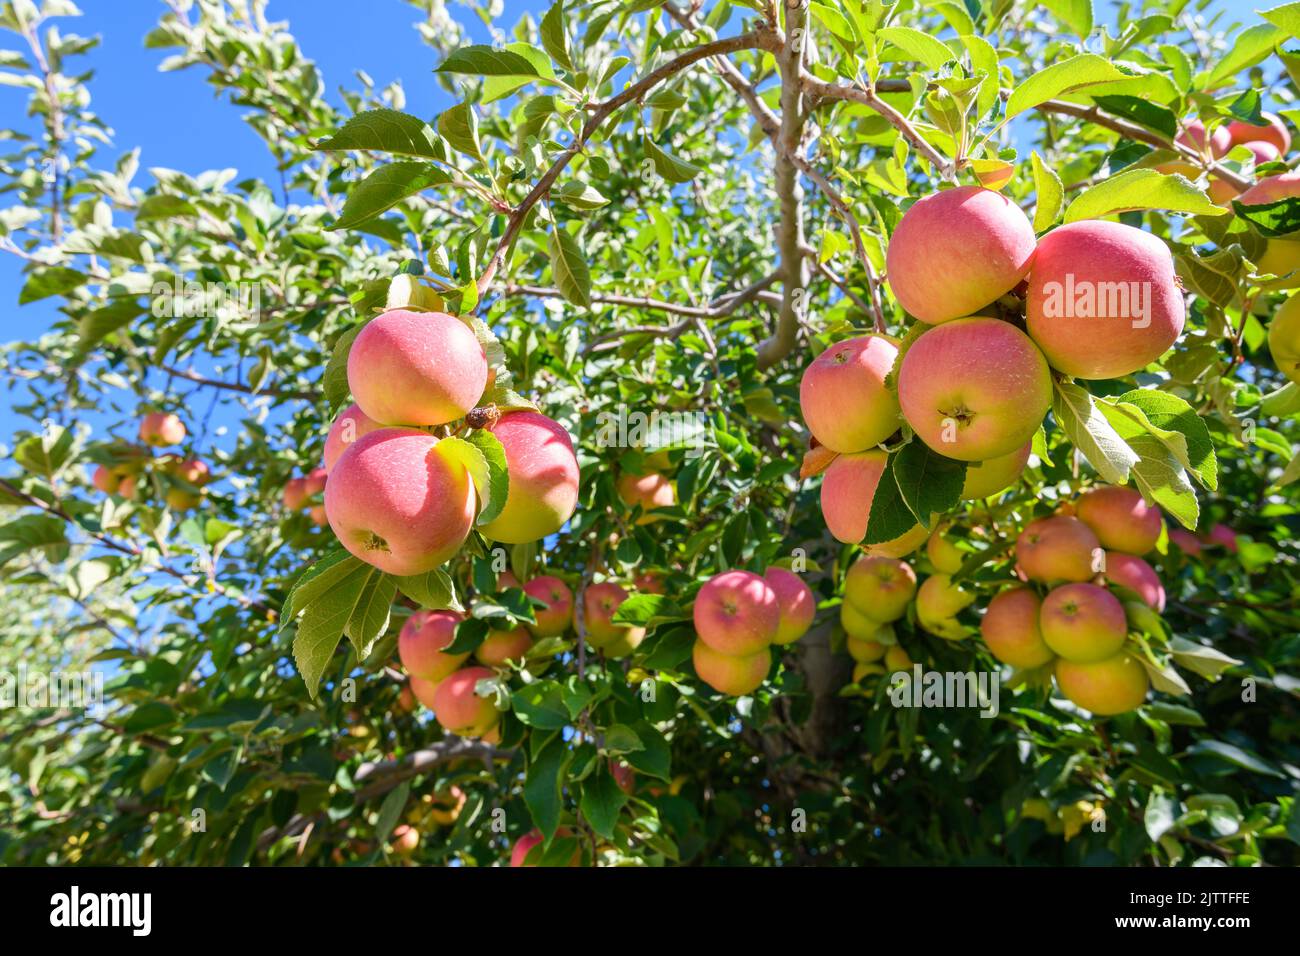 Masse an frischen Washingtoner Äpfeln in einem Obstgarten, bereit für den nationalen und internationalen Verzehr zu pflücken Stockfoto